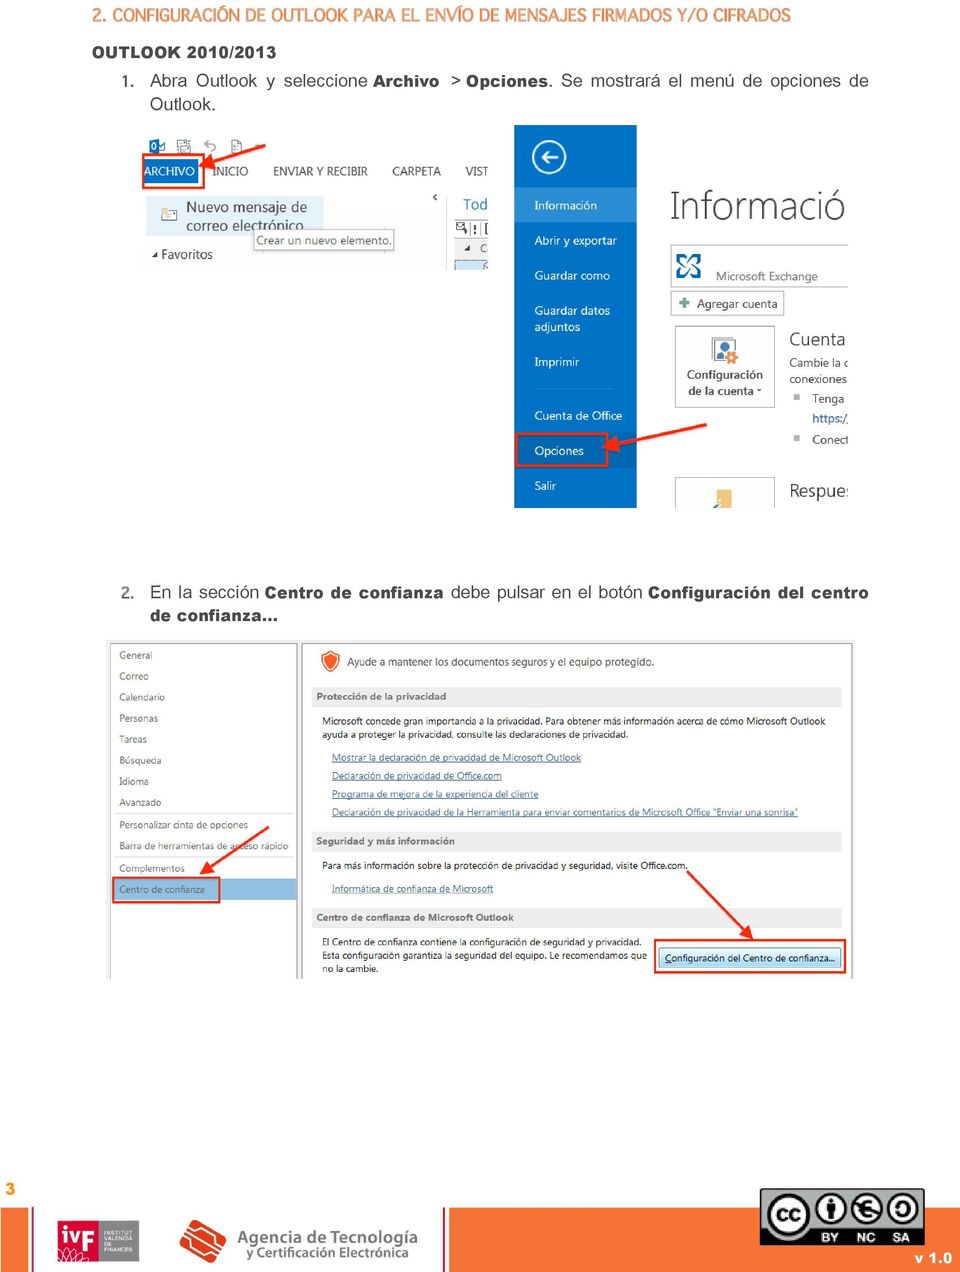 Abra Outlook y seleccione Archivo > Opciones.